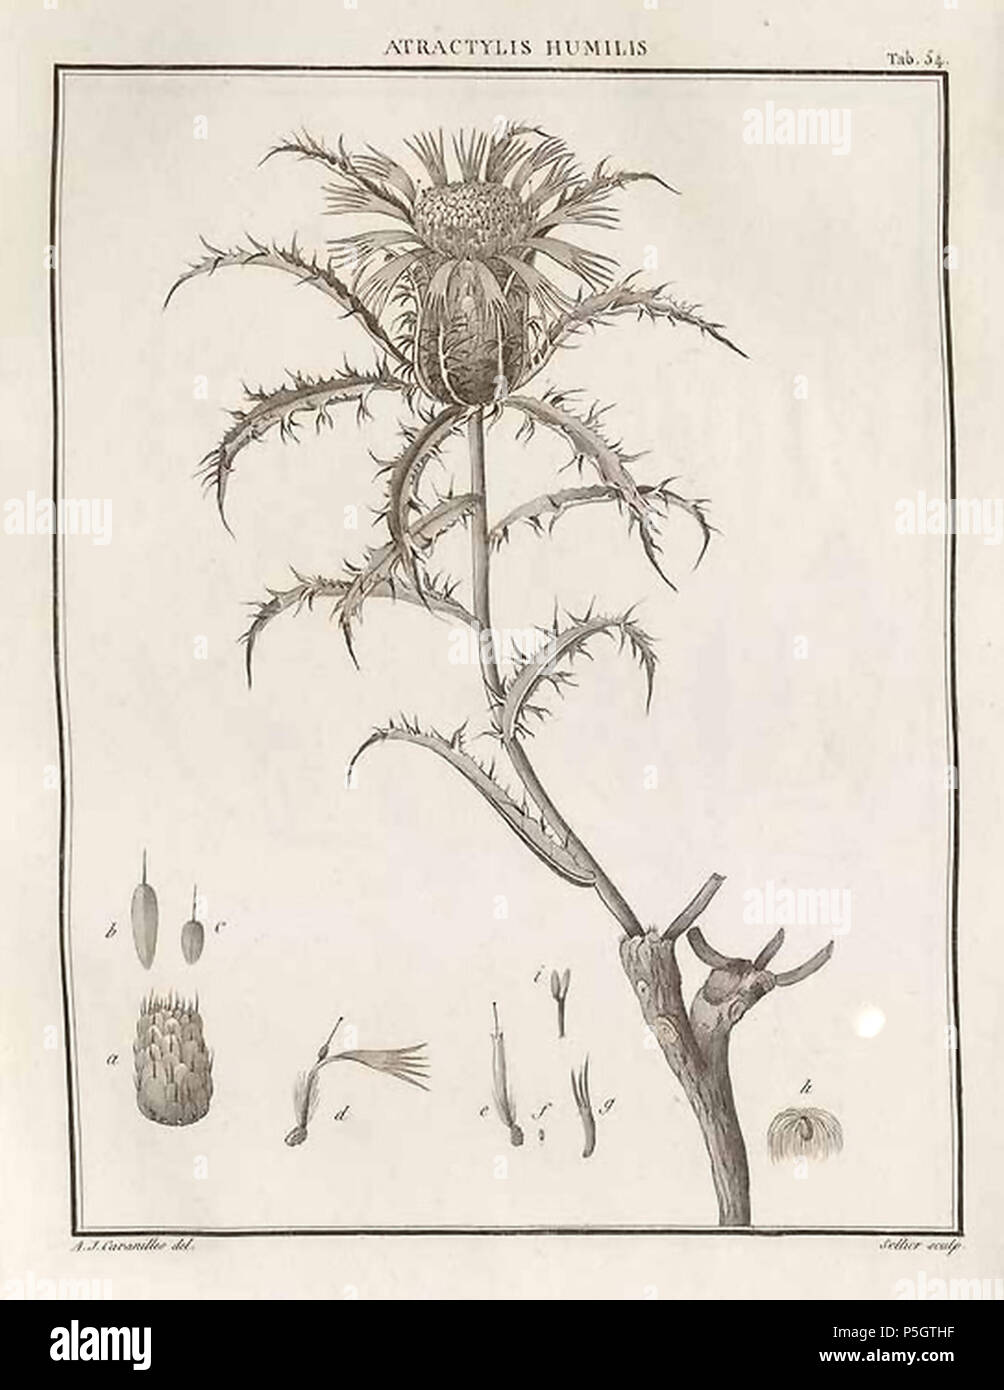 N/A. English: Atractylis humilis en Cavanilles, A.J., Icones et descriptiones plantarum, vol. 1: t. 54, 1791 . 1791. Cavanilles, A.J., 49 A. humilis-Cav.-1 Stock Photo